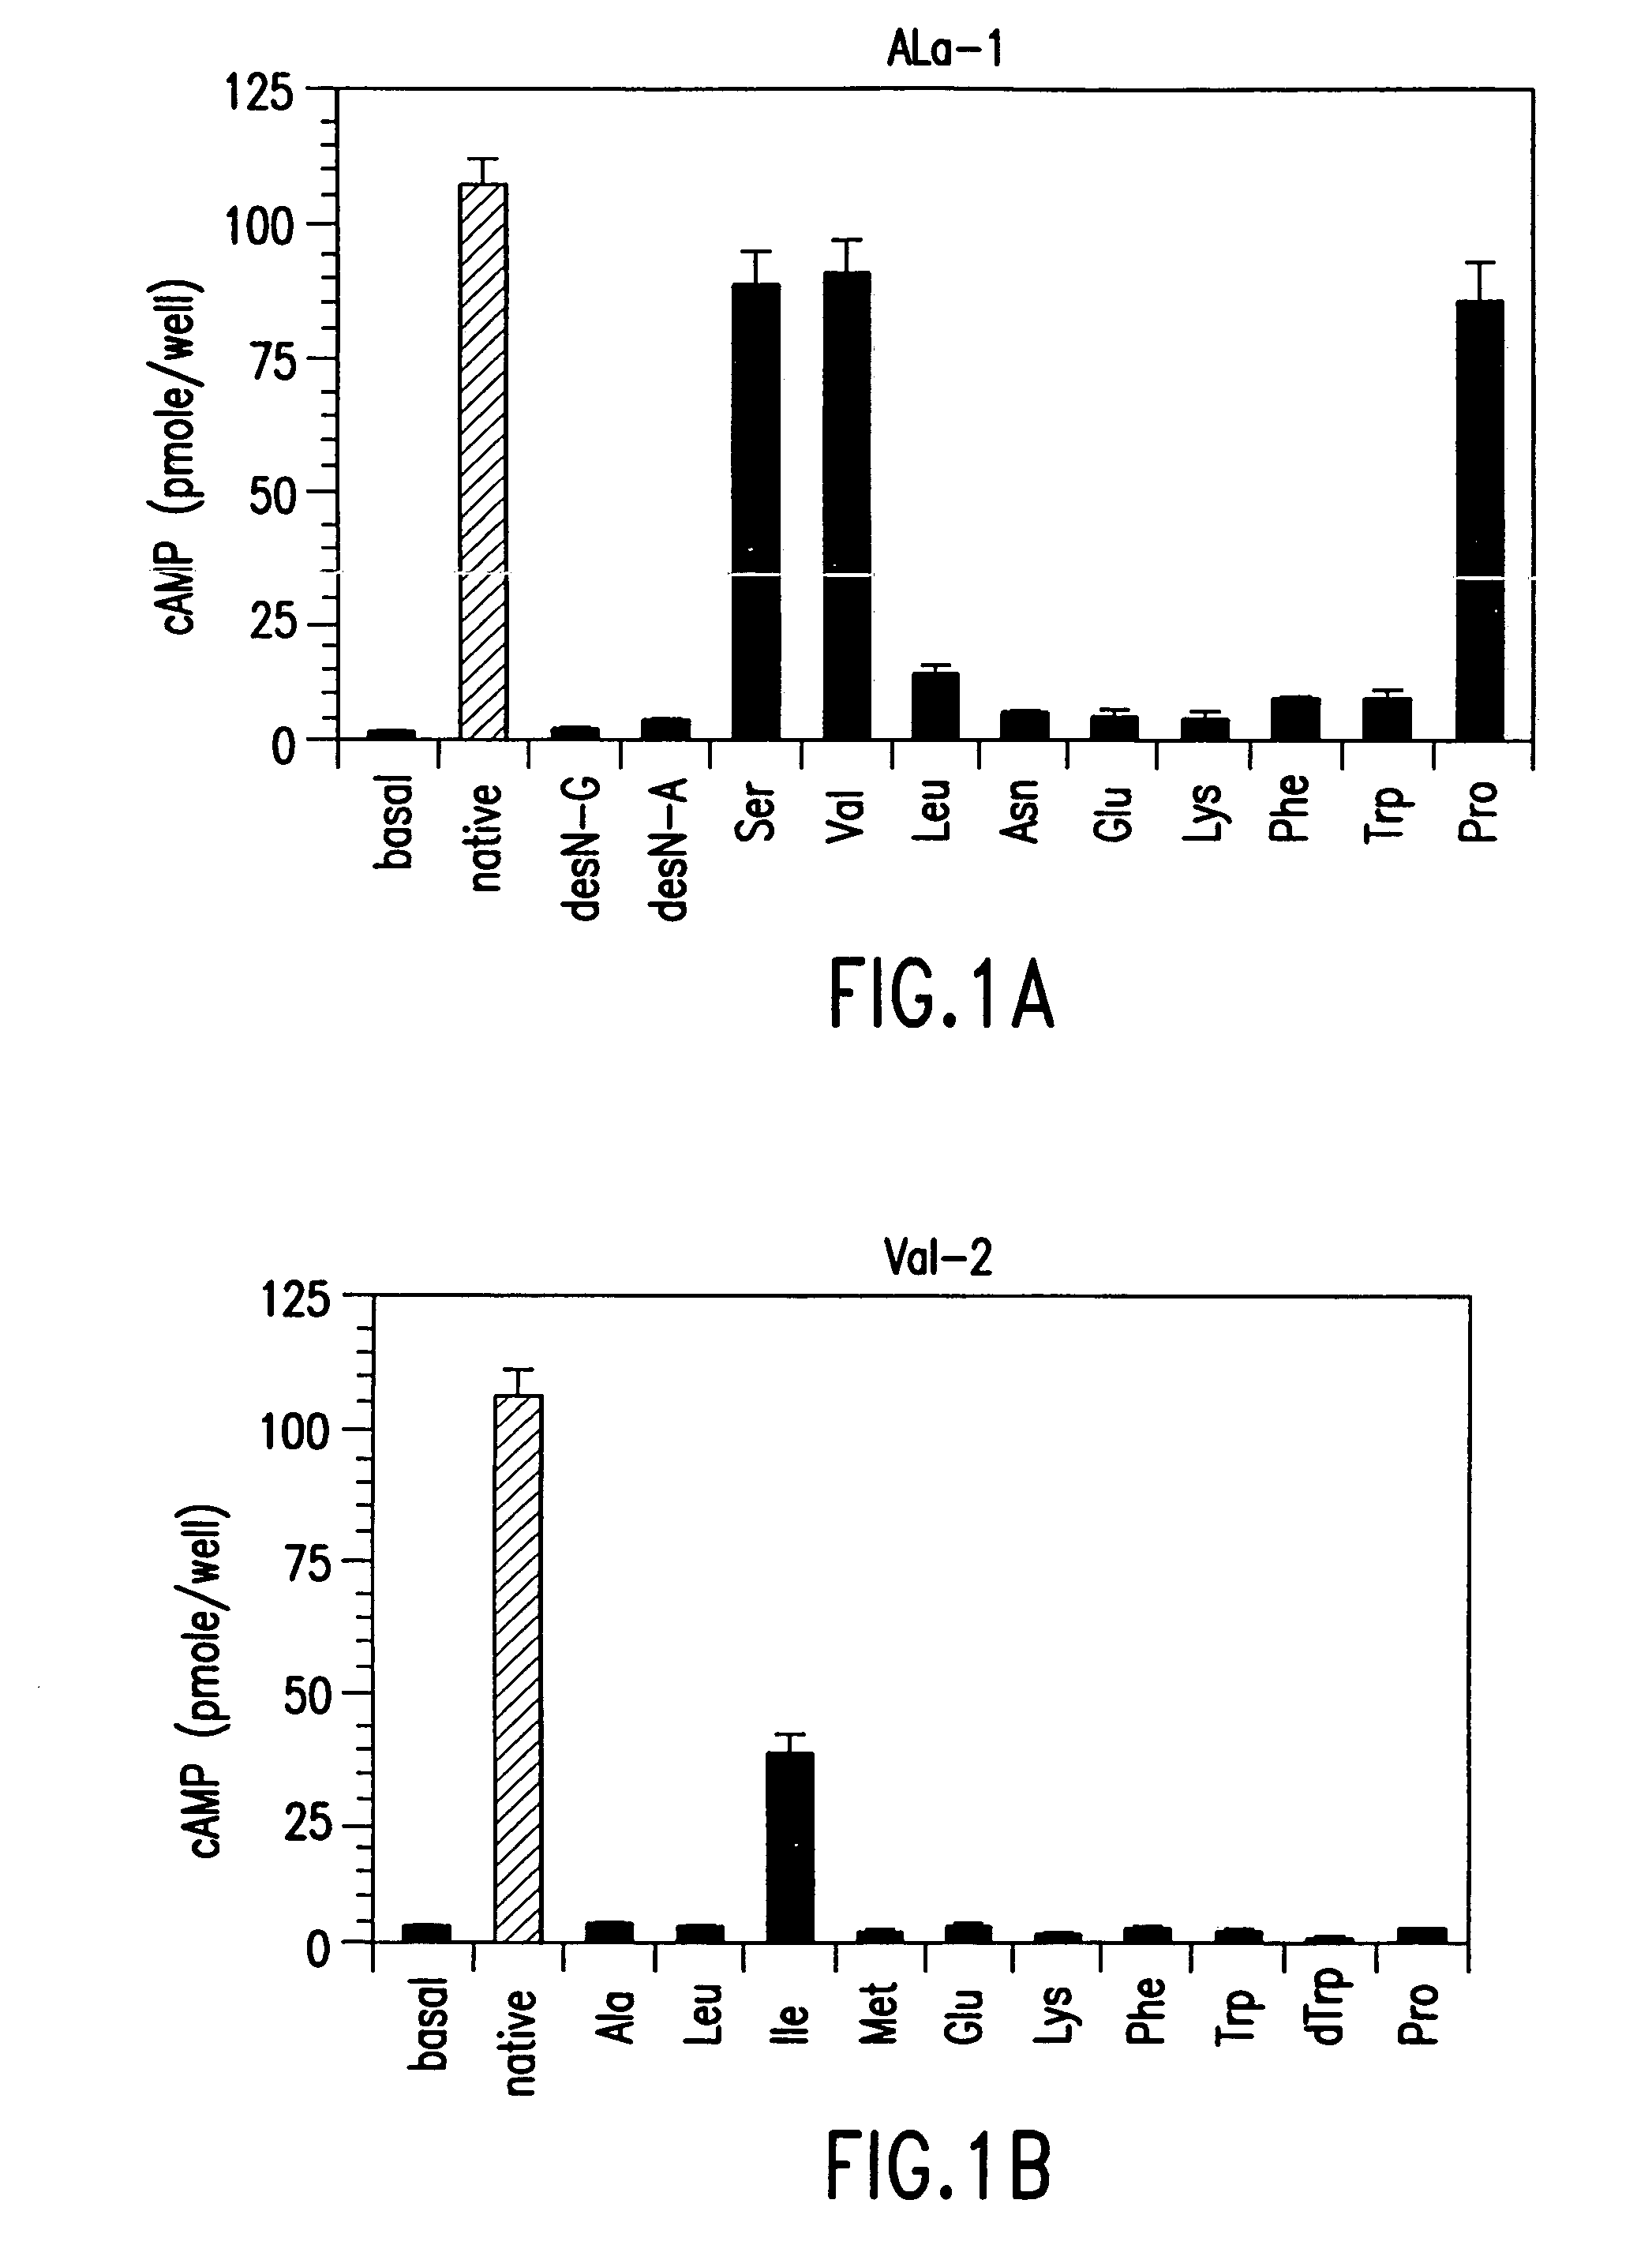 Nucleic acids encoding parathyroid hormone (PTH) derivatives